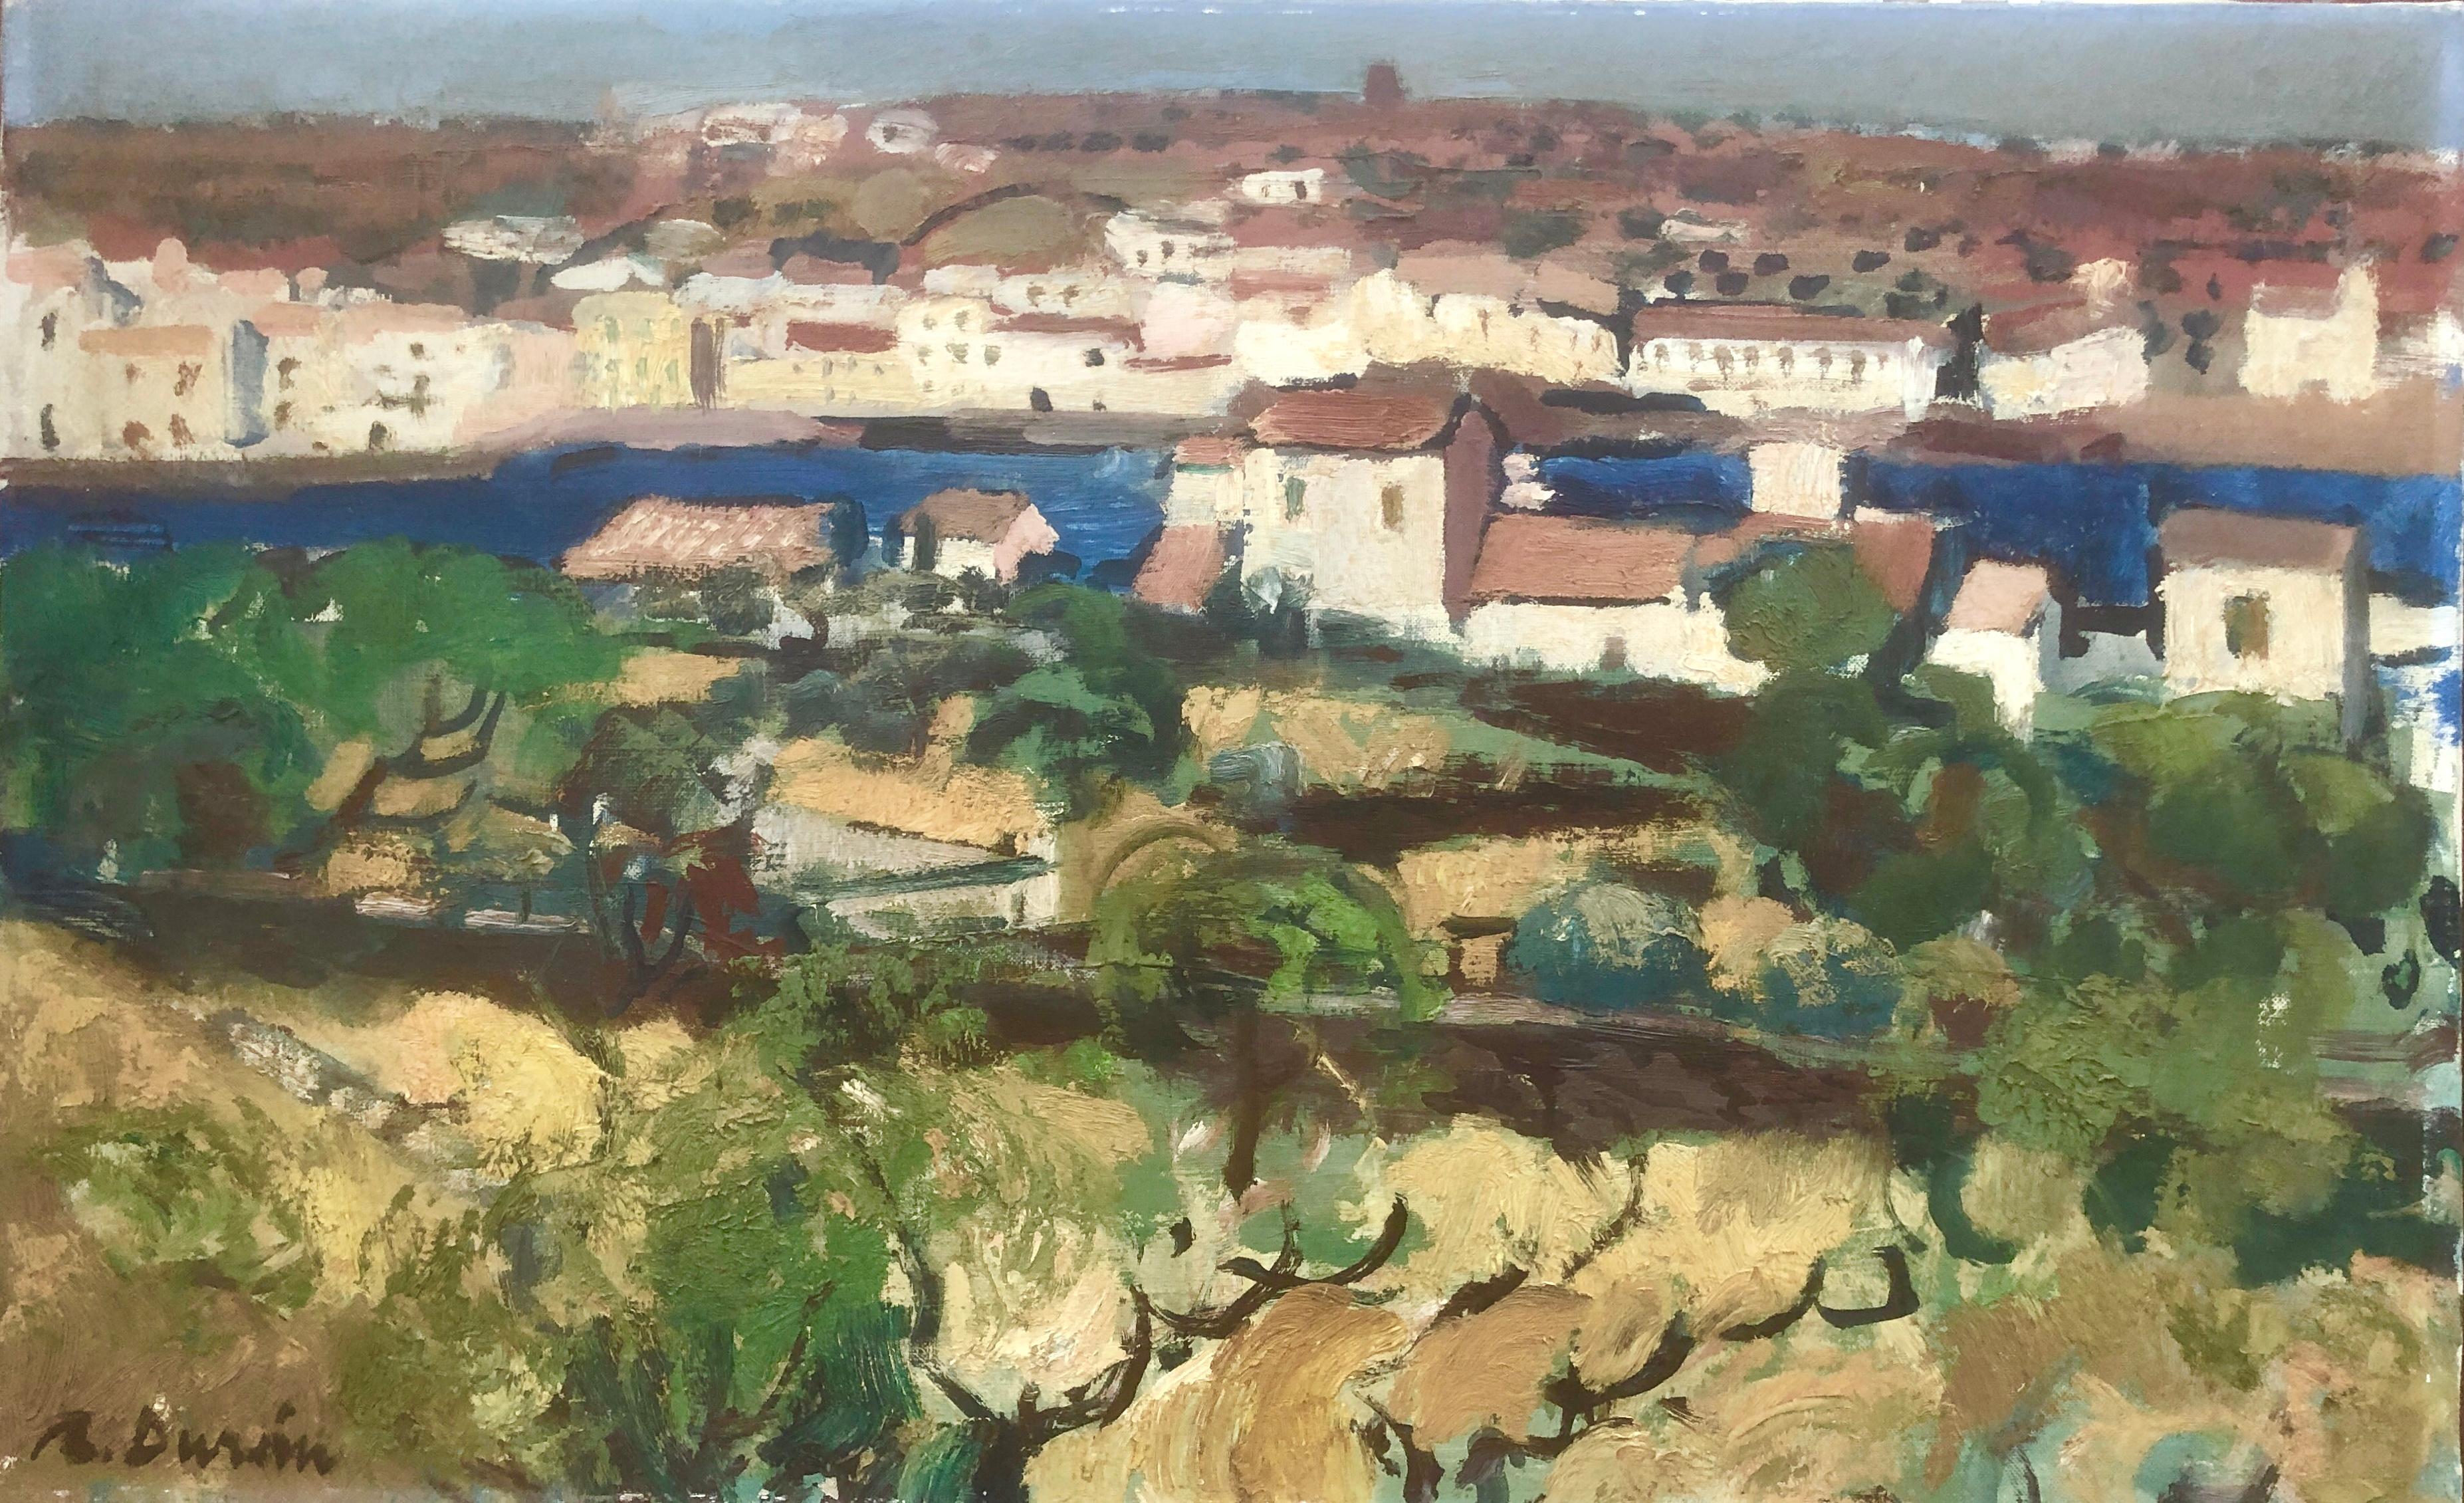 Landscape Painting Rafael Duran Benet - Cadaques Espagne huile sur toile peinture paysage marin espagnol méditerranée